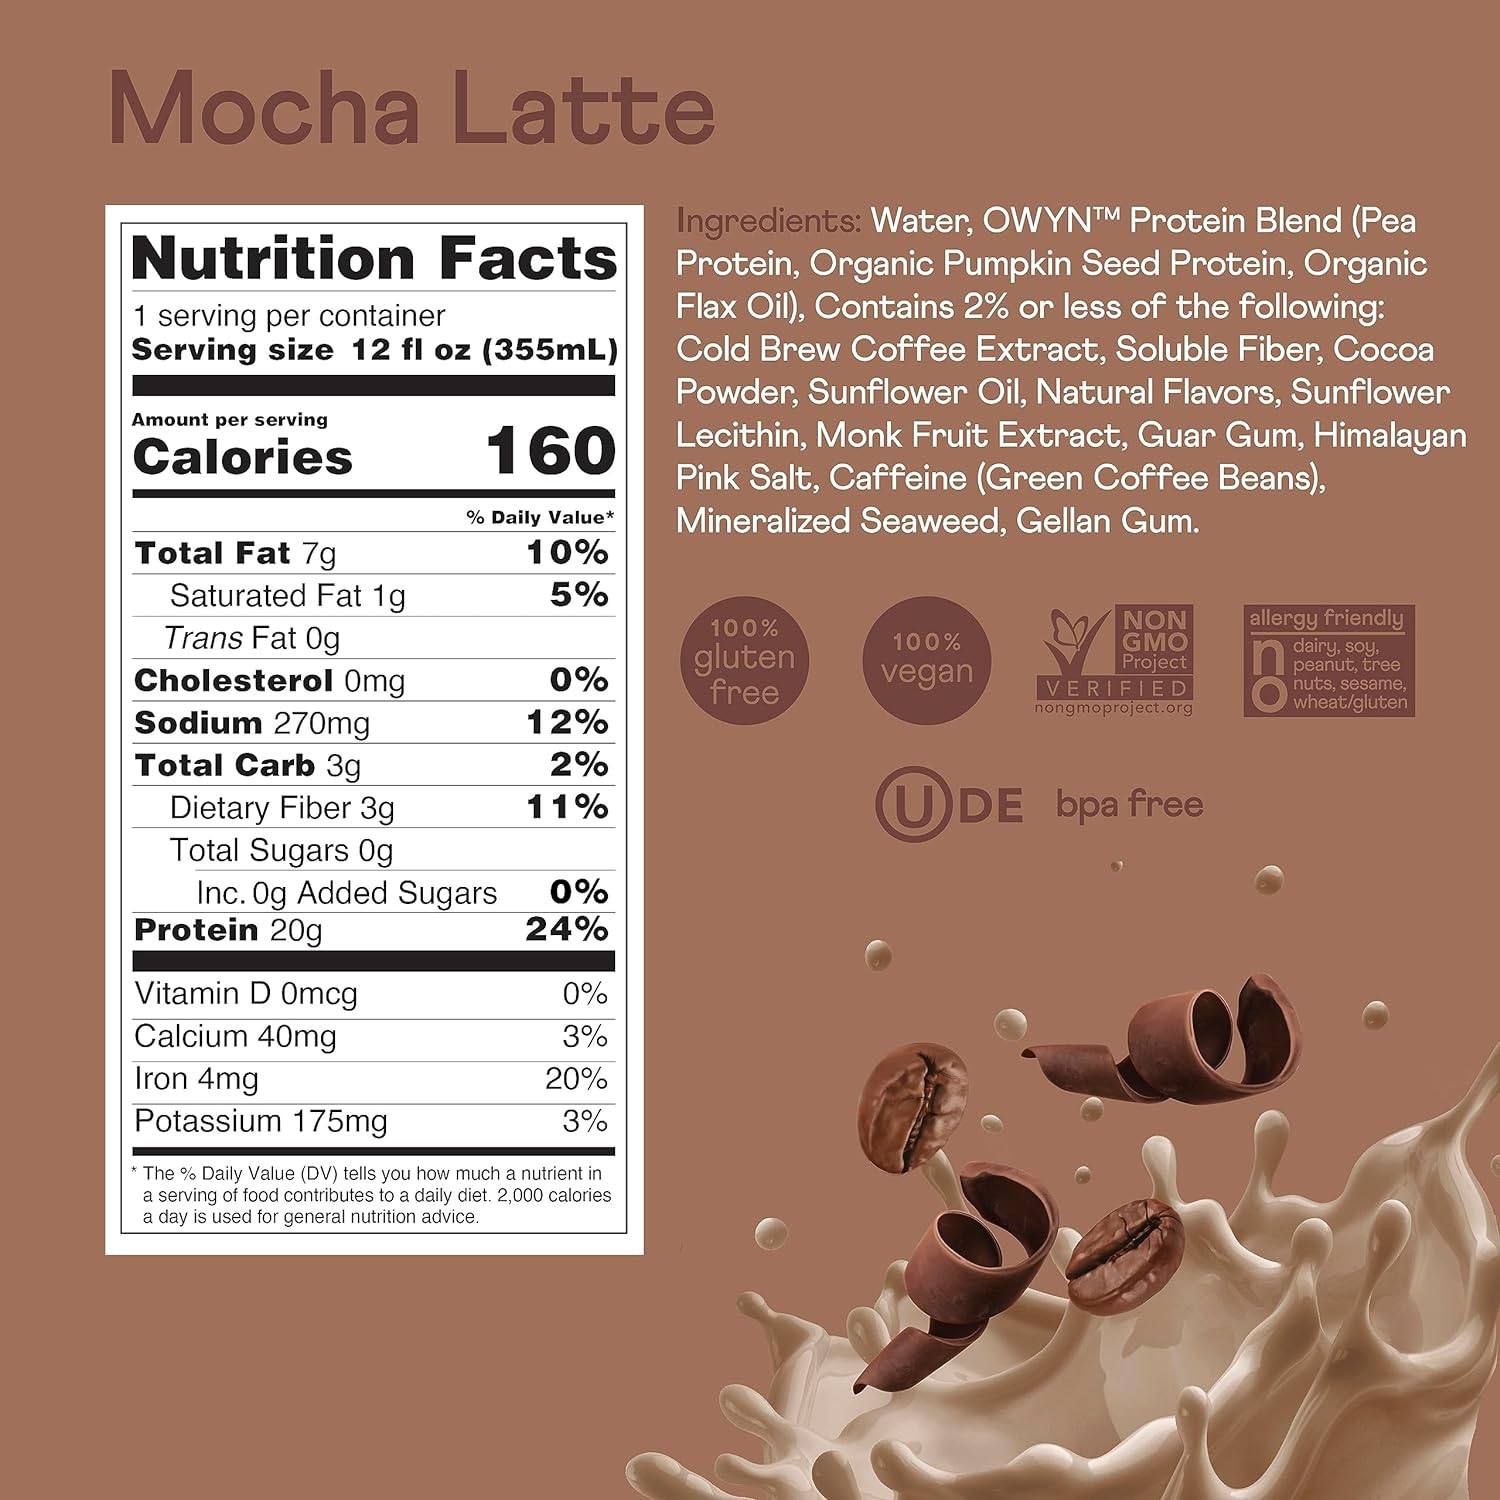 Owyn Doubleshot Protein Coffee Shake Mocha latte / 12 Bottles